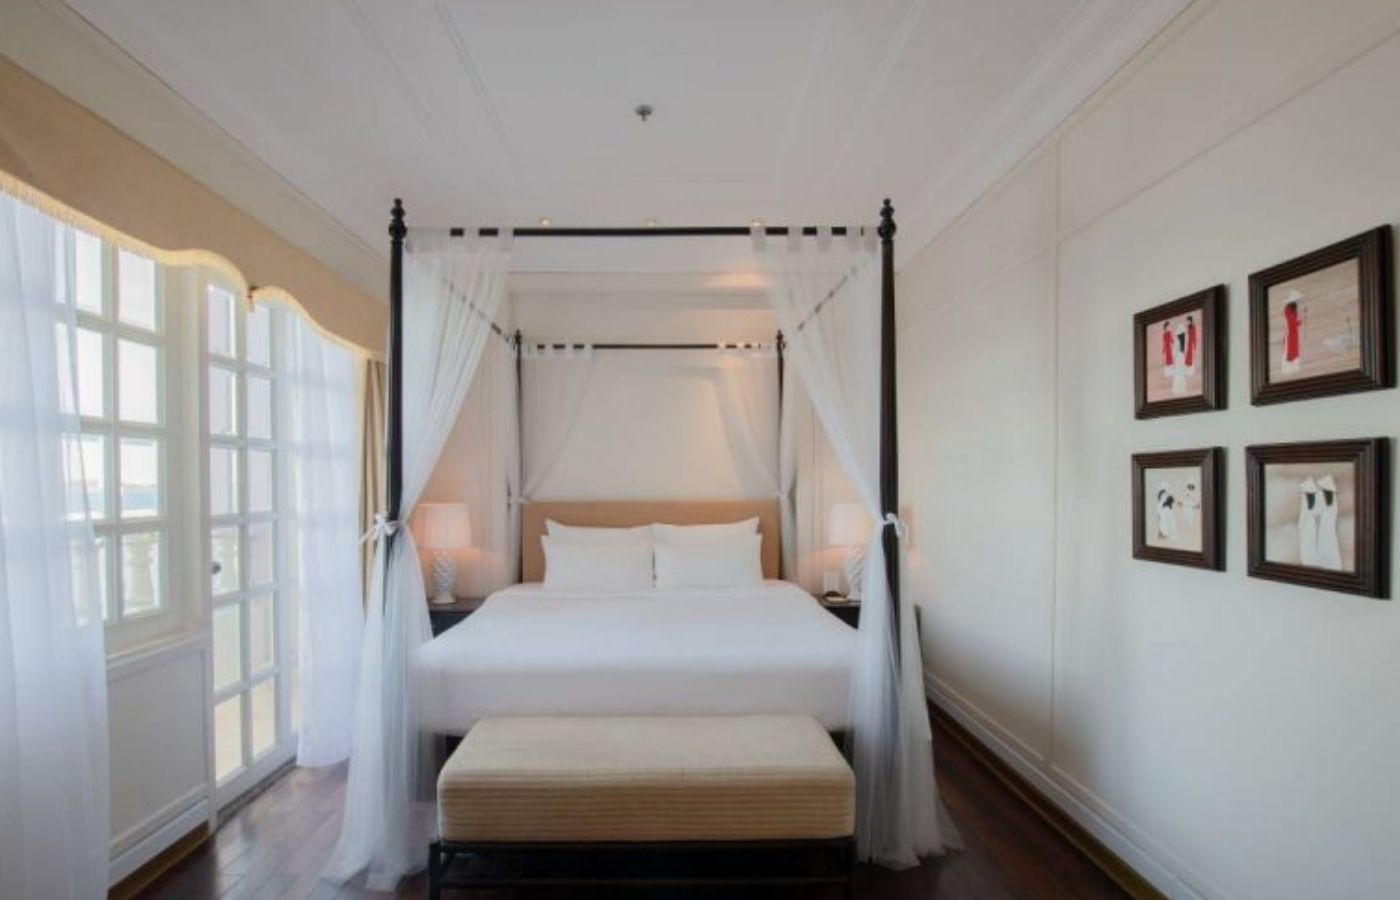 Sunrise Nha Trang Beach Hotel & Spa - Mang phong cách cổ điển giữa lòng thành phố 6